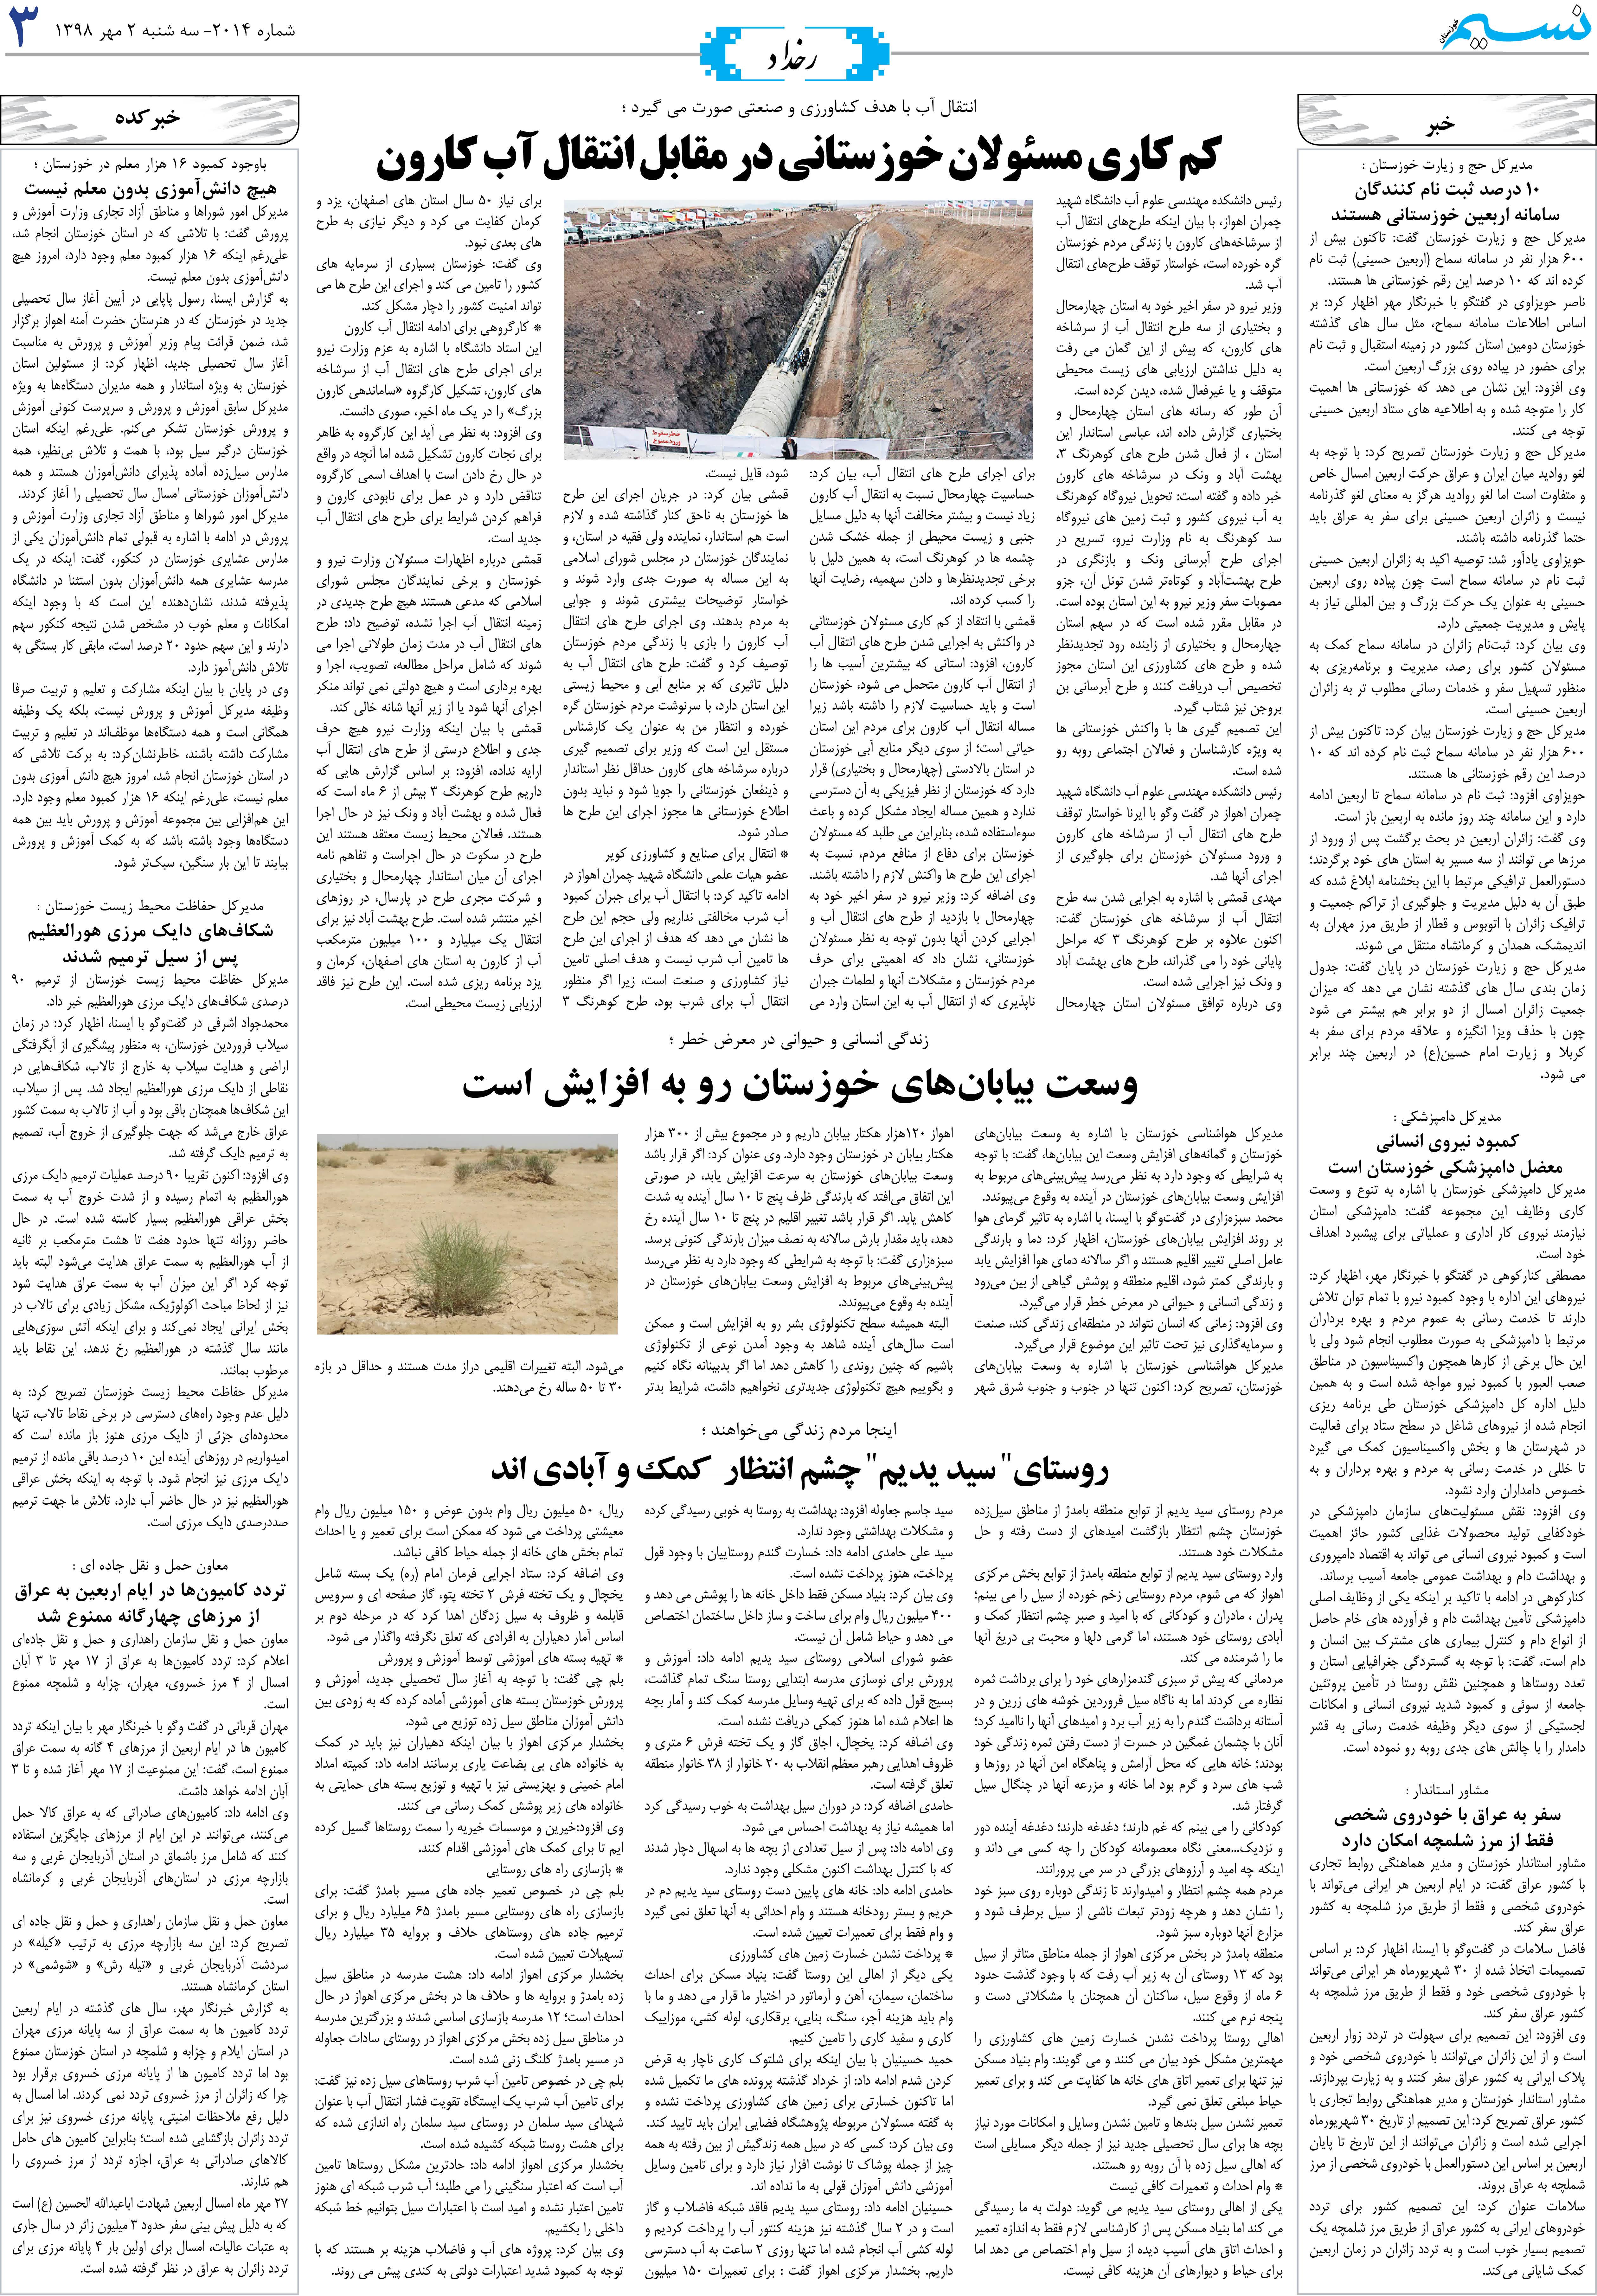 صفحه رخداد روزنامه نسیم شماره 2014